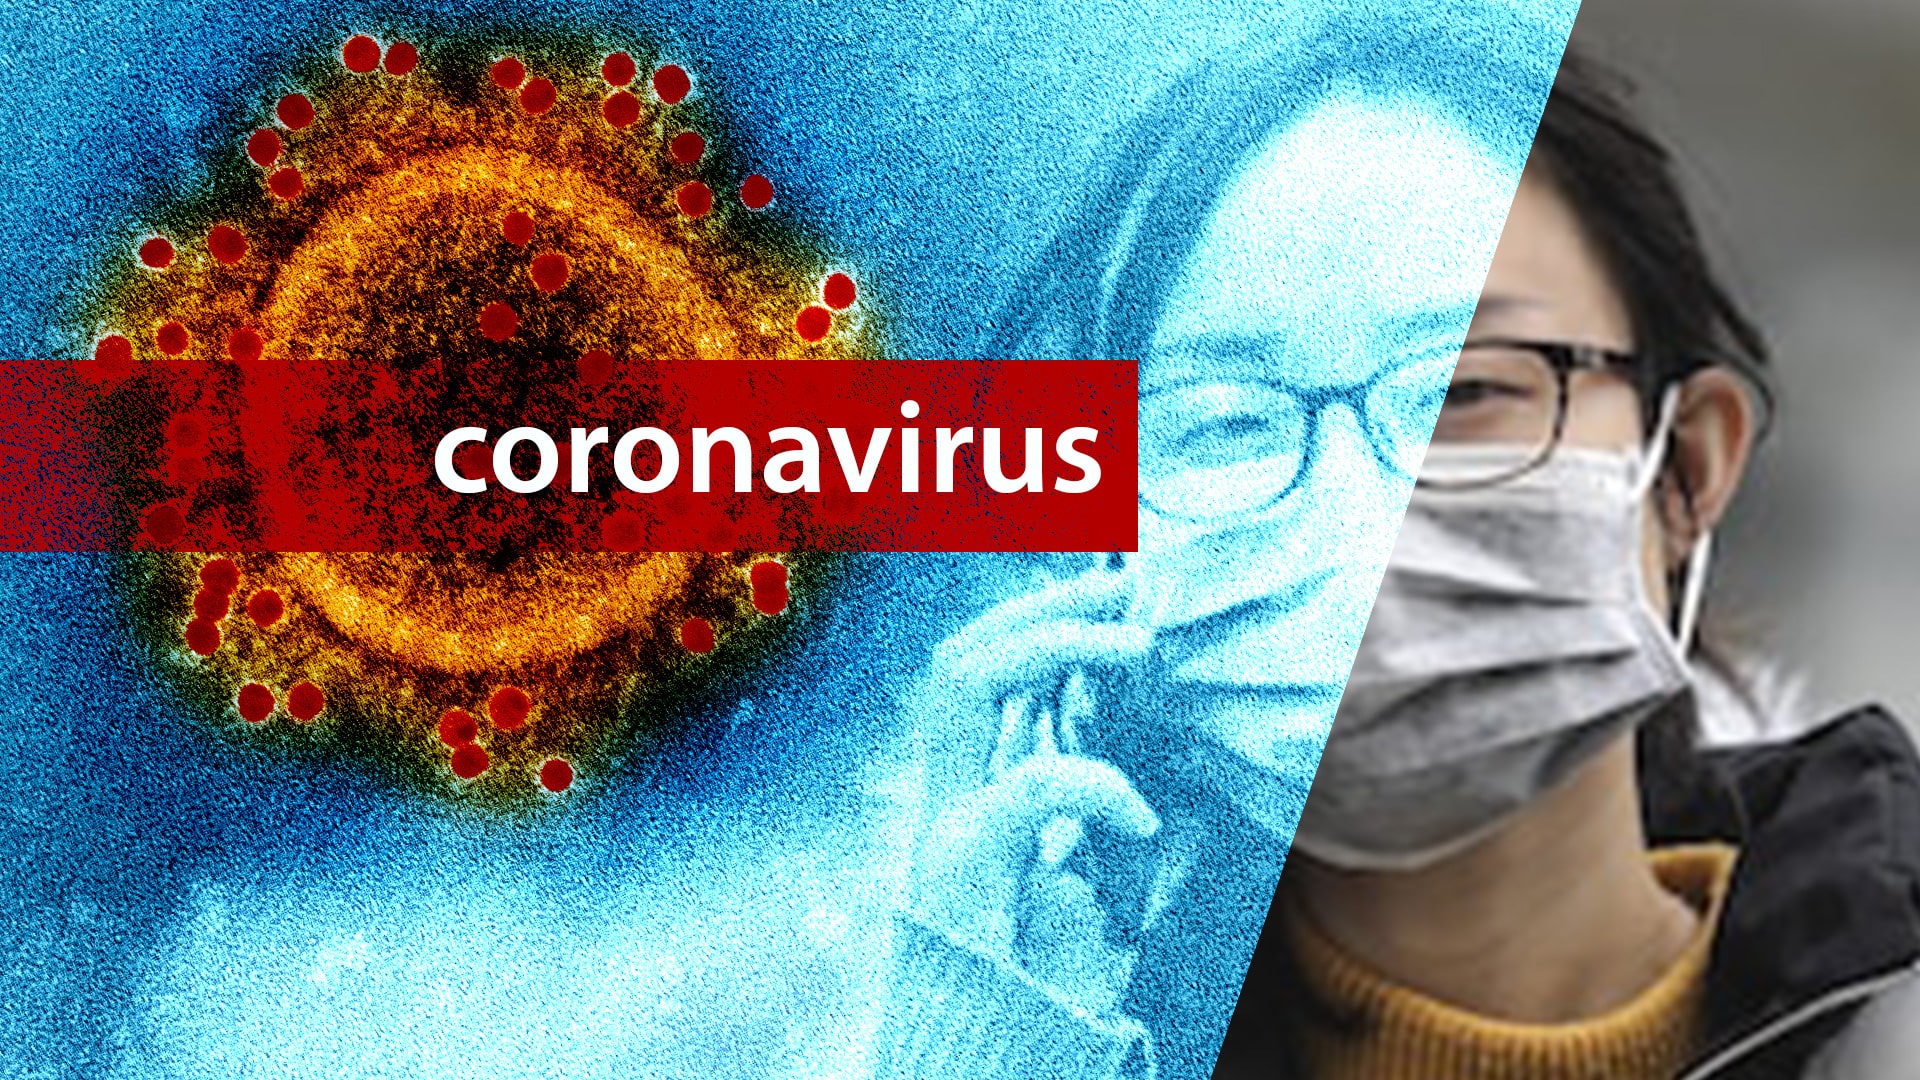 Gestire la paura da Coronavirus